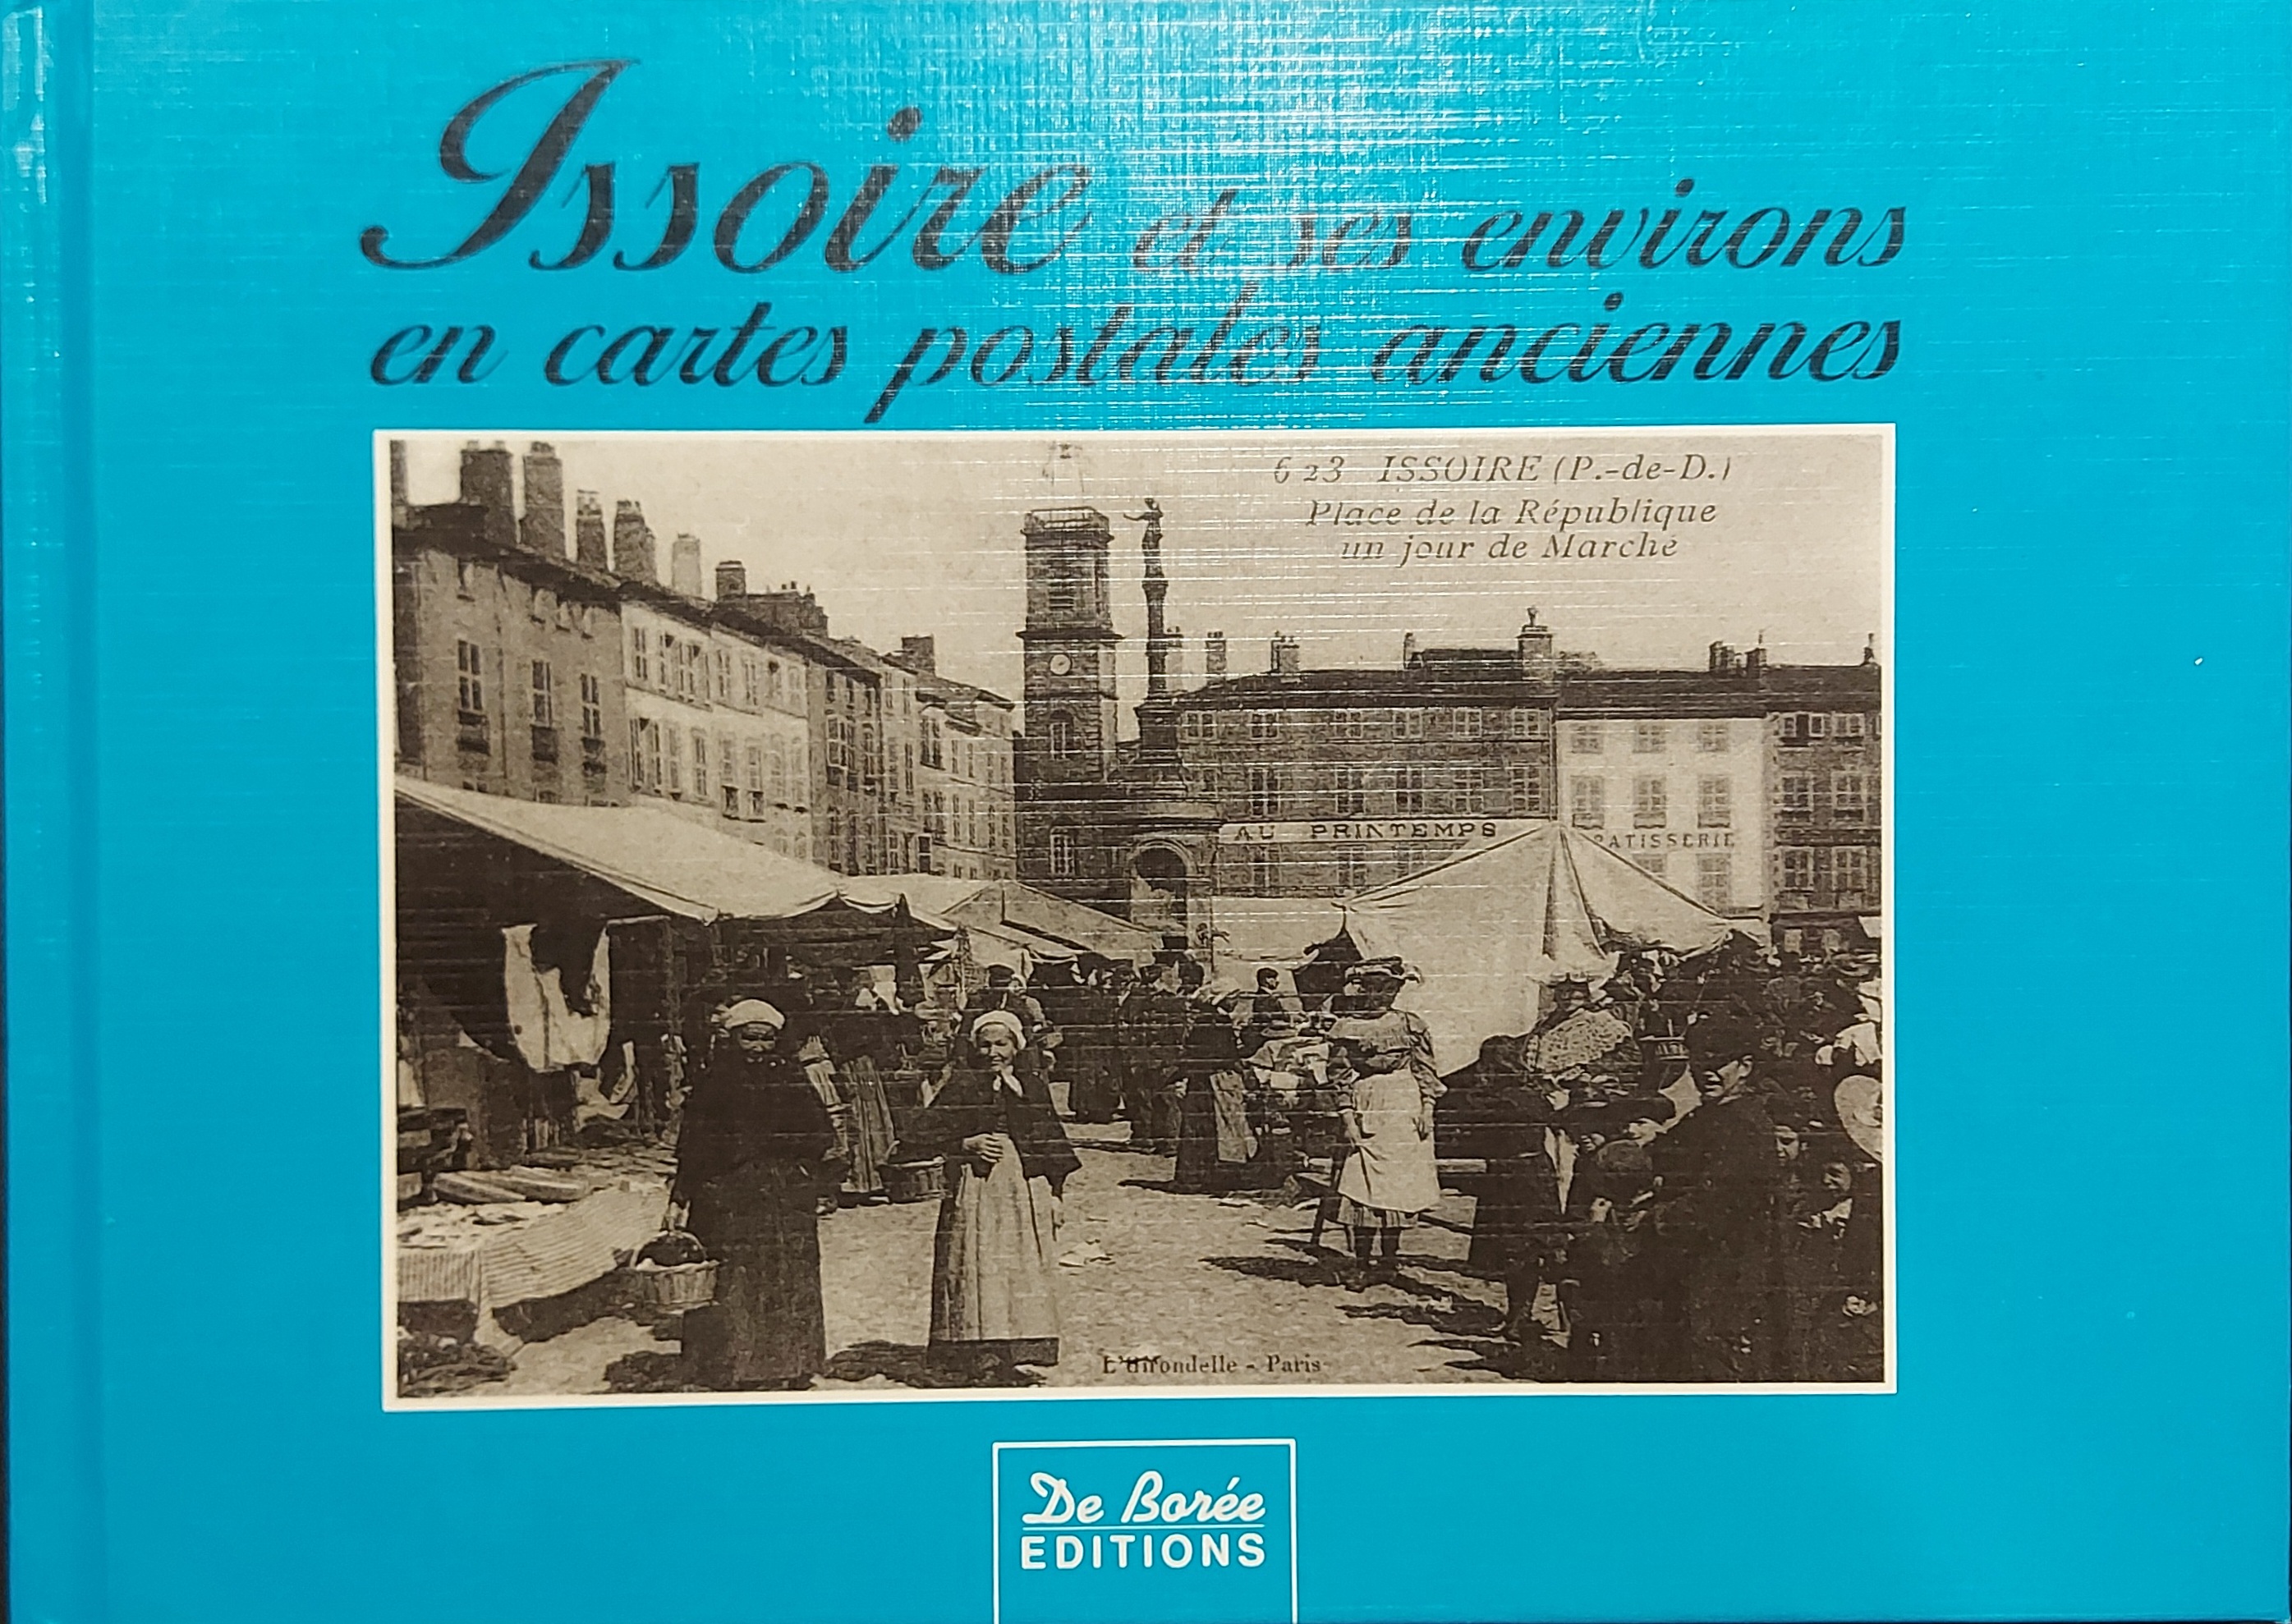 Issoire En Cartes Postales Anciennes by Ollier, Raoul ; Feuillâtre ...